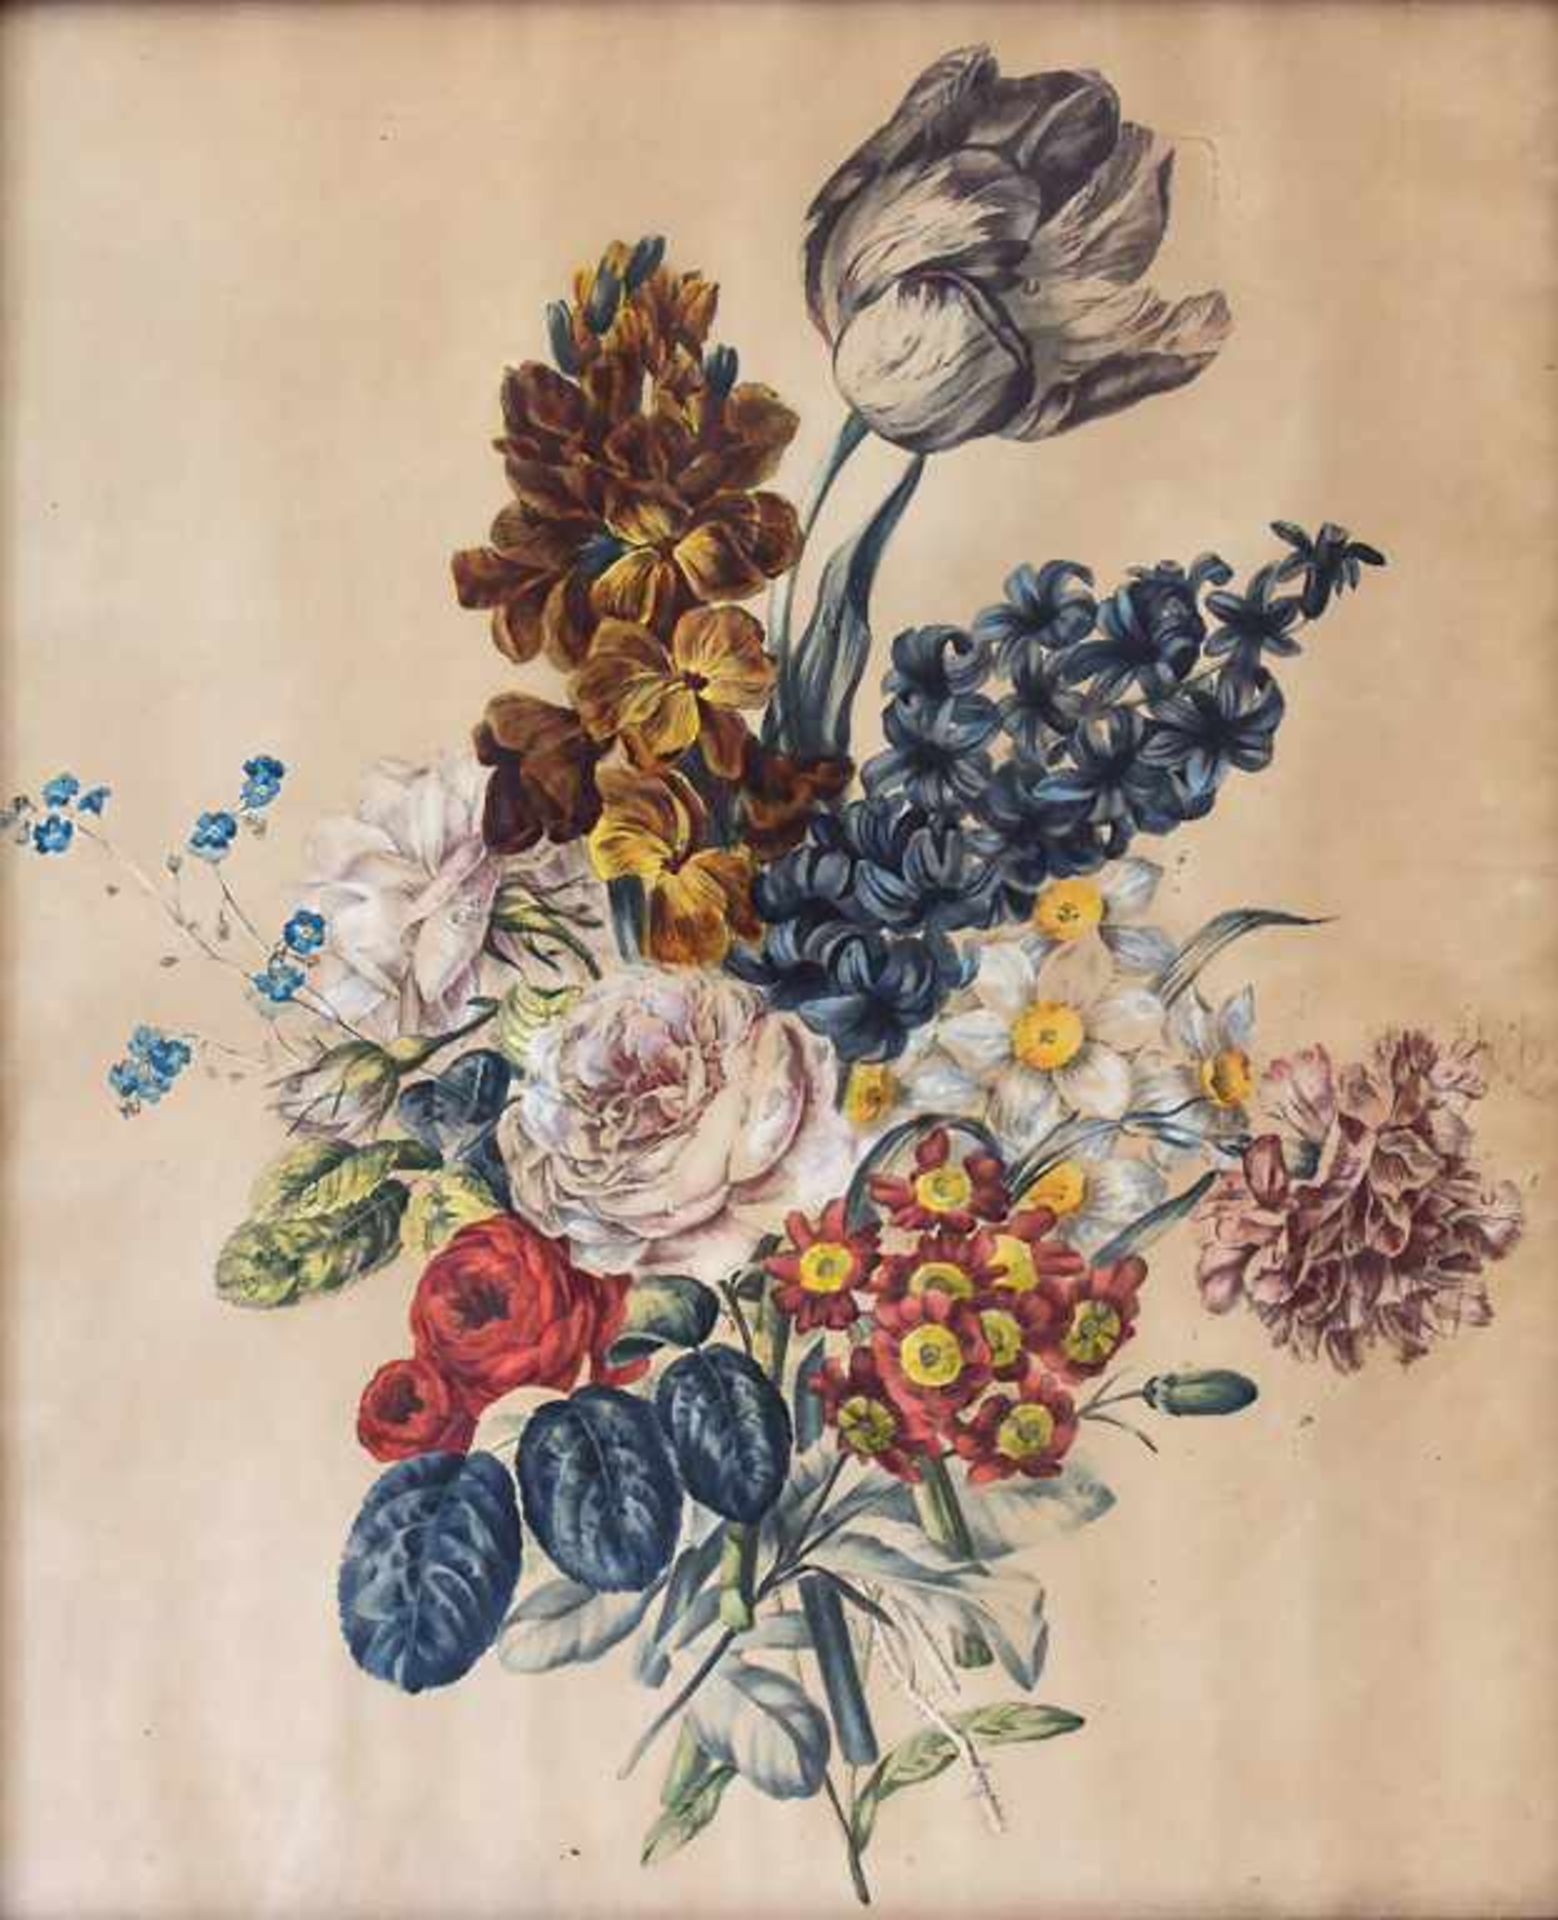 Künstler des 18. Jh., 'Blumenbouqet' / 'A flower bouquet'Technik: Mezzotintoradierung, aquarelliert,